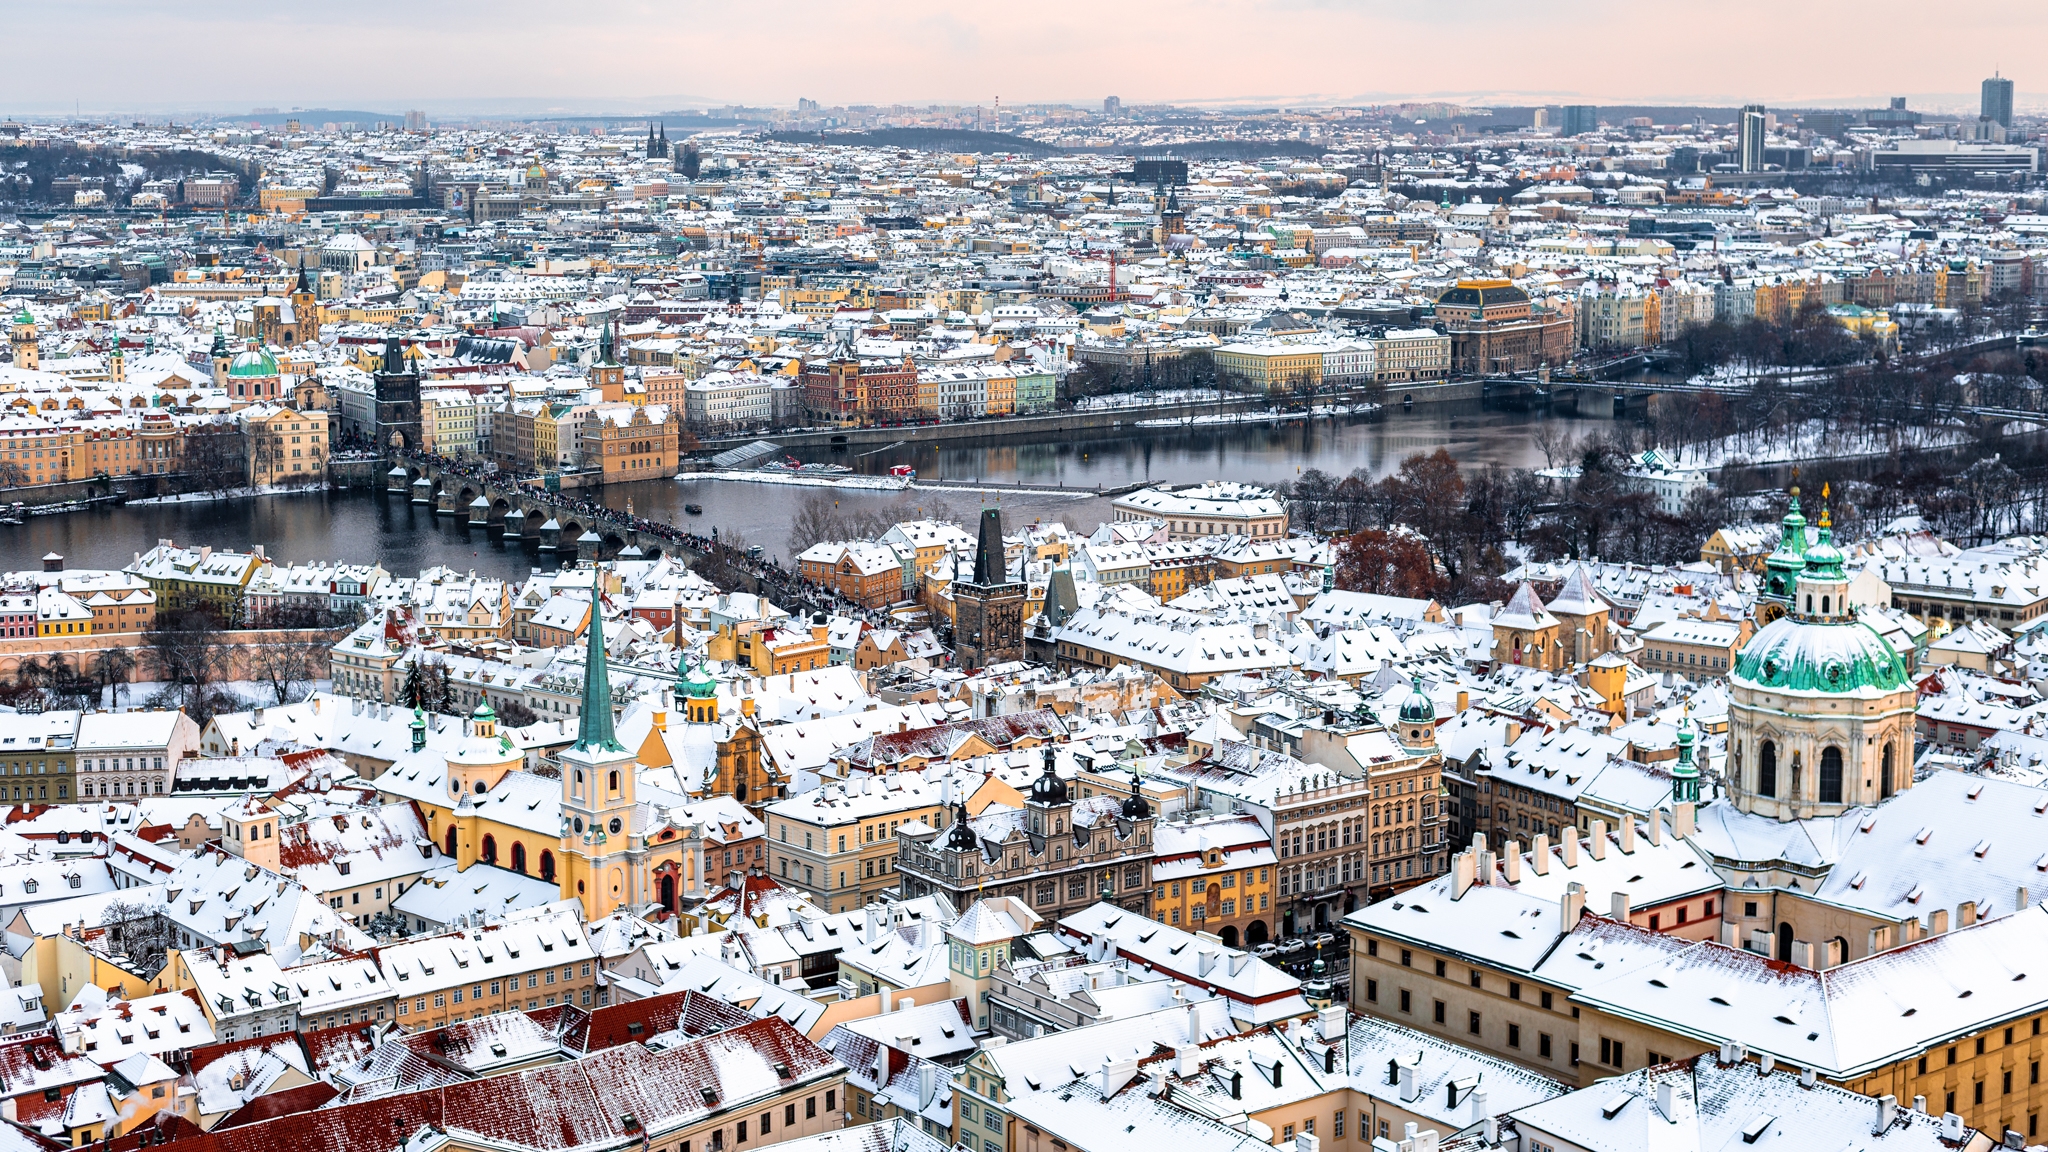 Wonderful Prague under snow